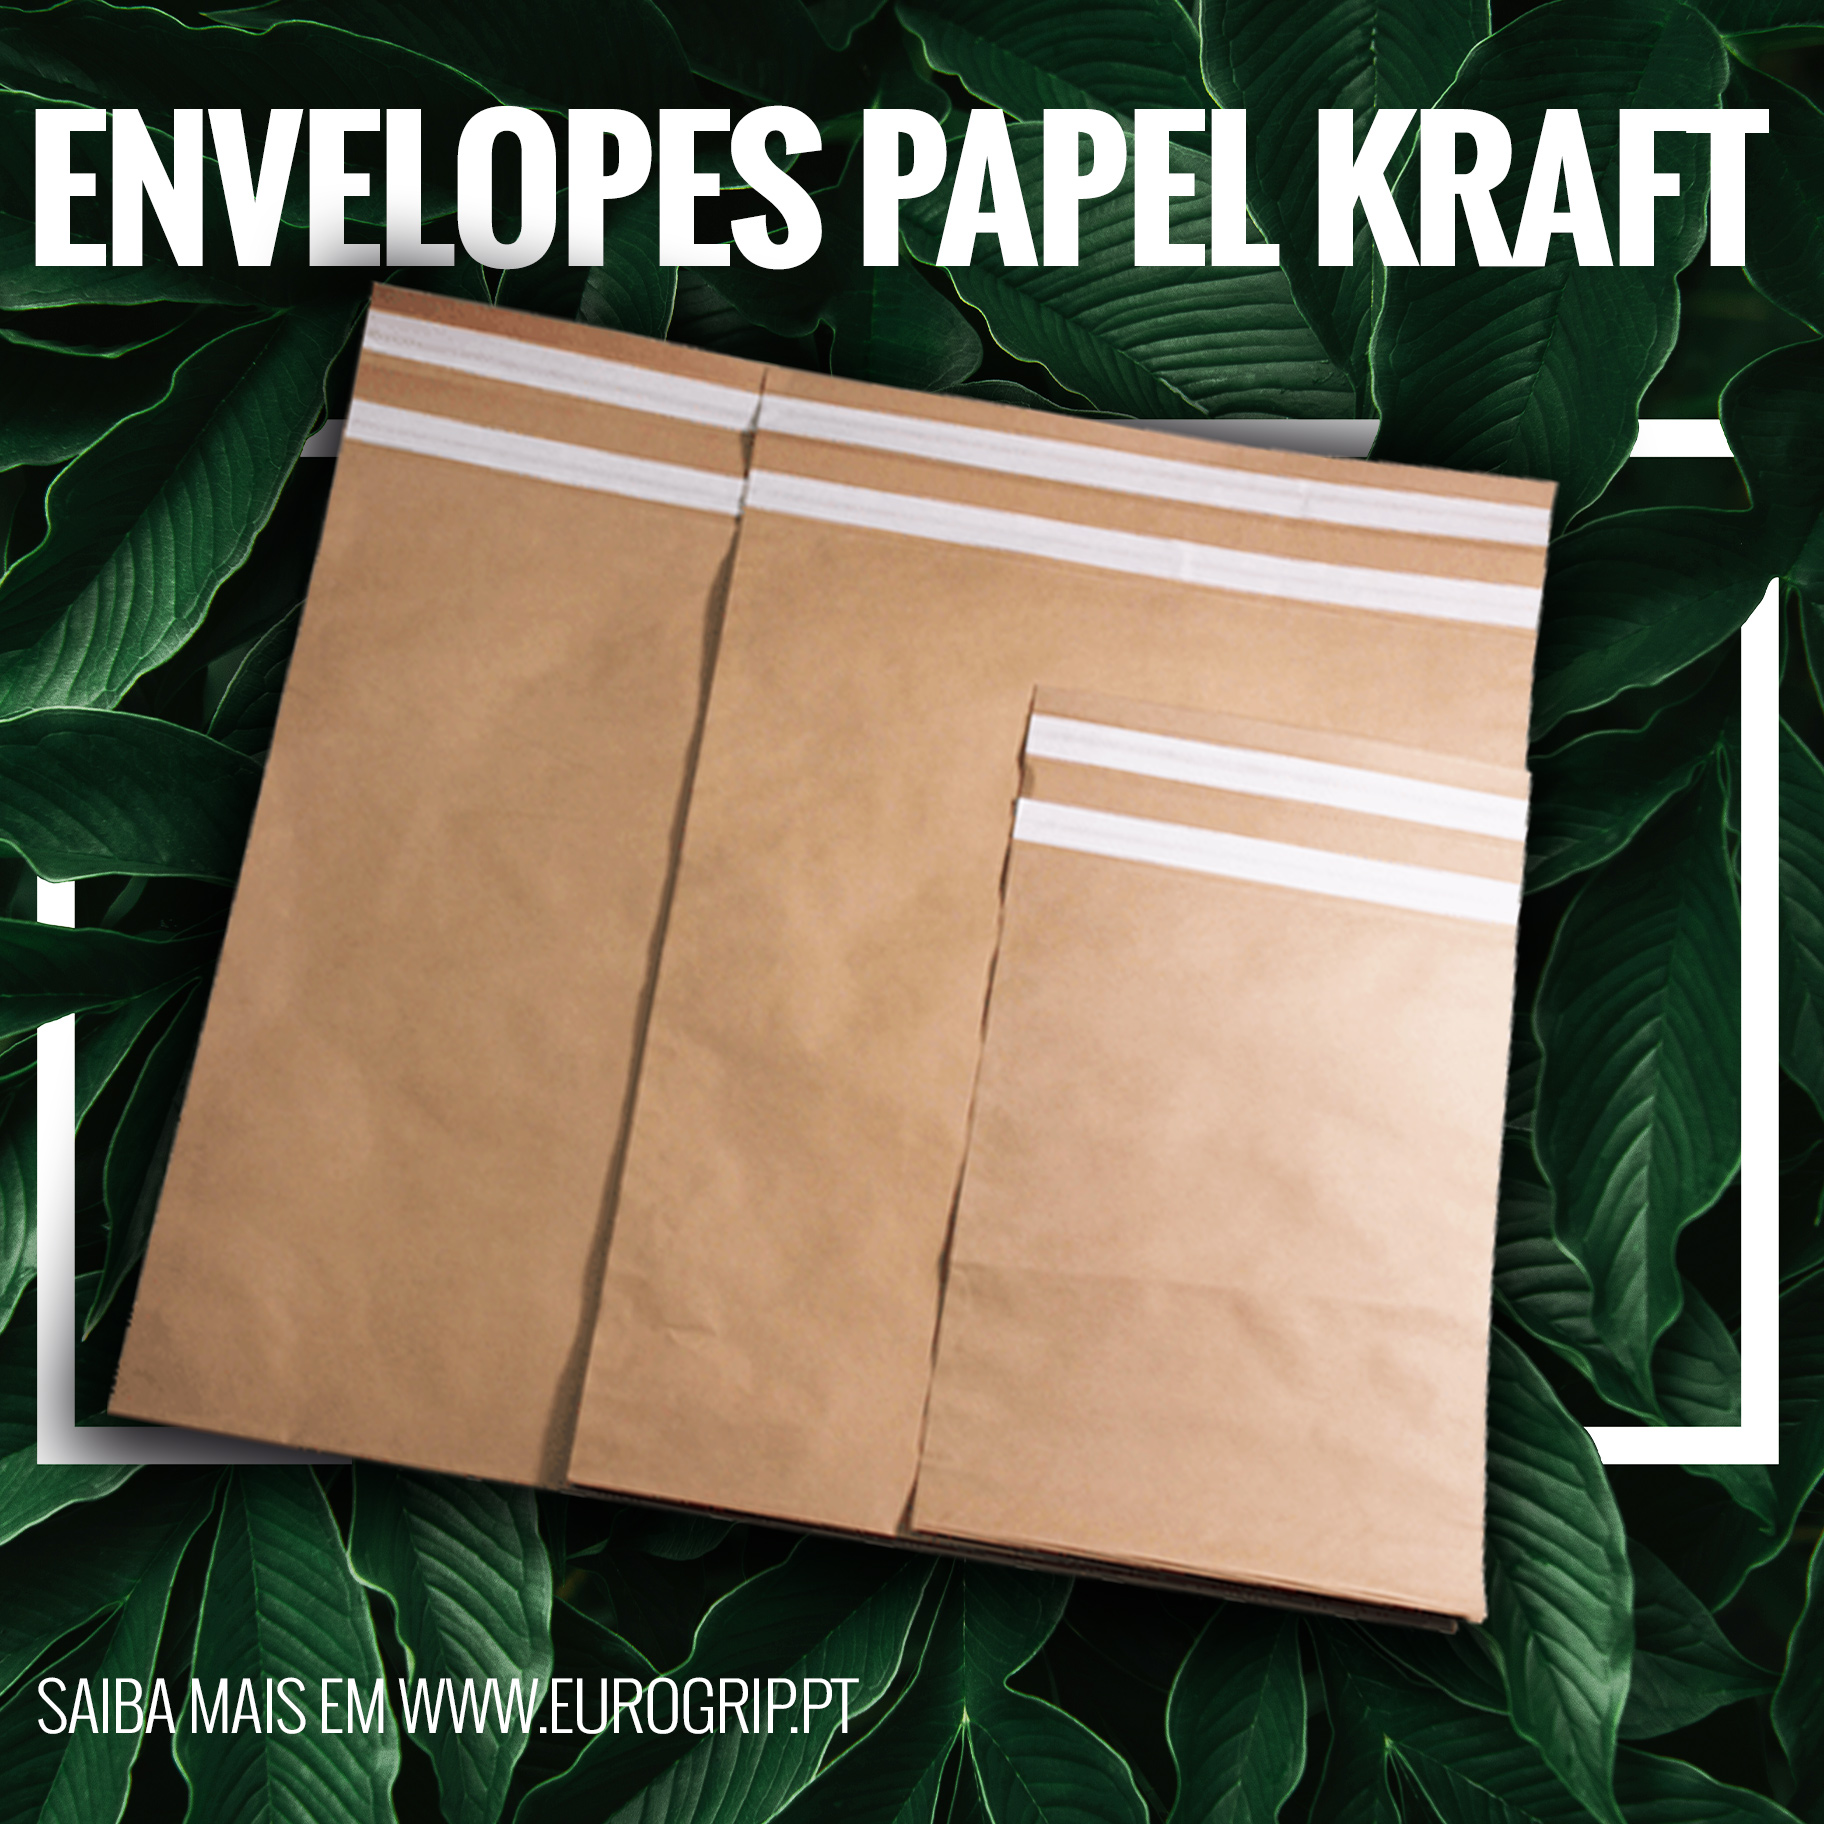 Envelopes de Papel Kraft: A Embalagem Sustentável e Versátil para o seu Negócio